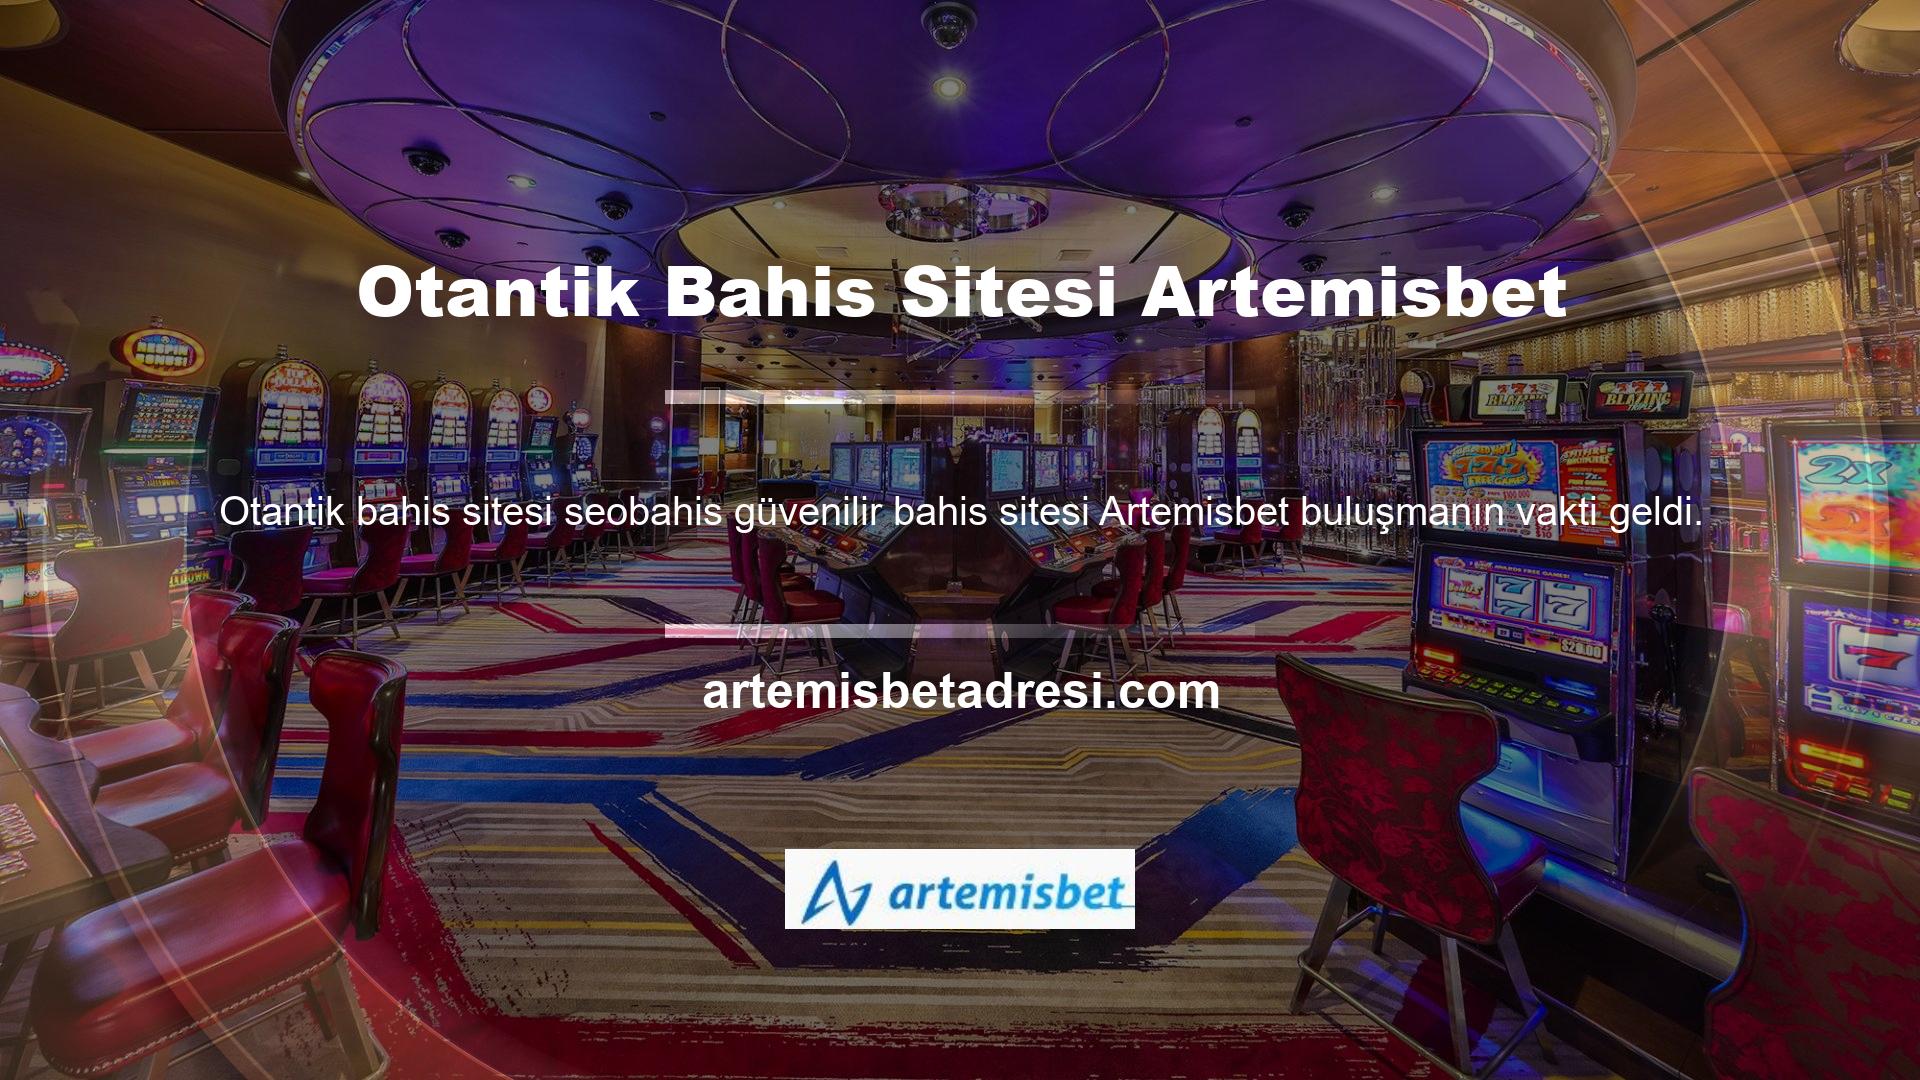 Artemisbet, uzun yıllardır piyasada olan ve ülkemizdeki tüm bahis meraklılarının dikkatini çeken güvenilir bir bahis sitesidir